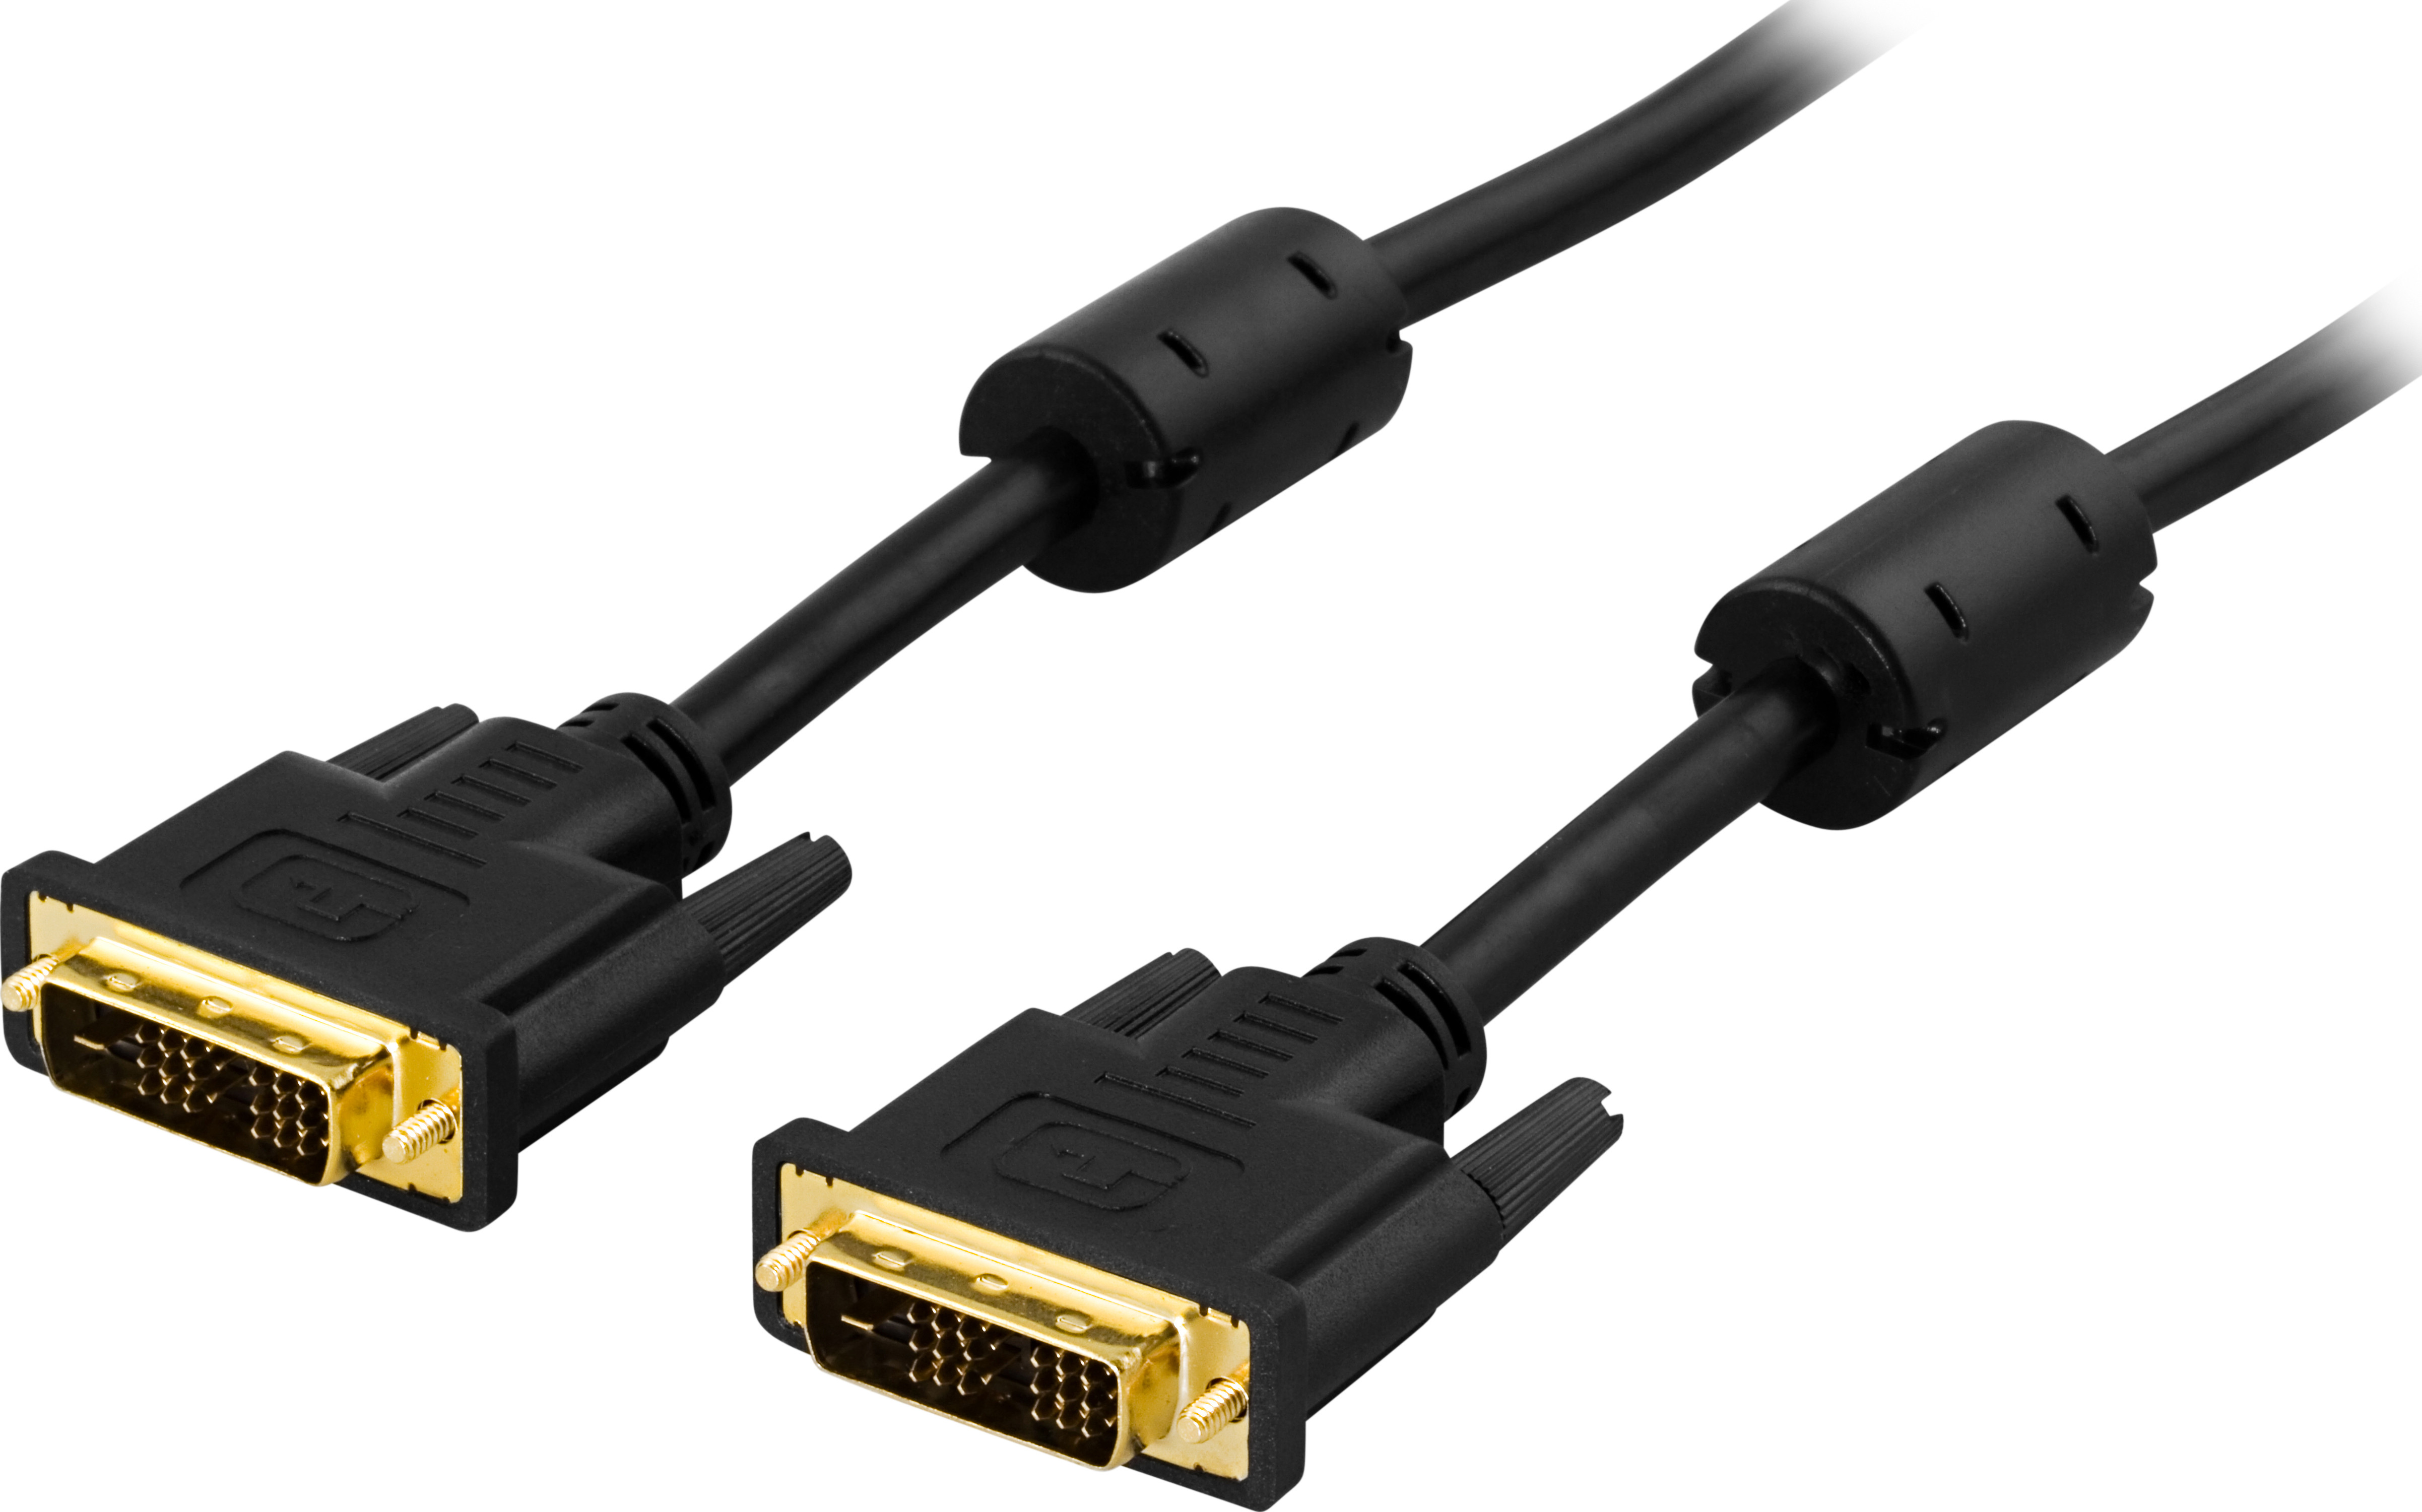 DVI Single Link monitoriaus kabelis DELTACO DVI-D 18 + 1 kontaktas ha-ha, paauksuotos jungtys, laidas iš gryno vario, 3m, juodas / VE011-B